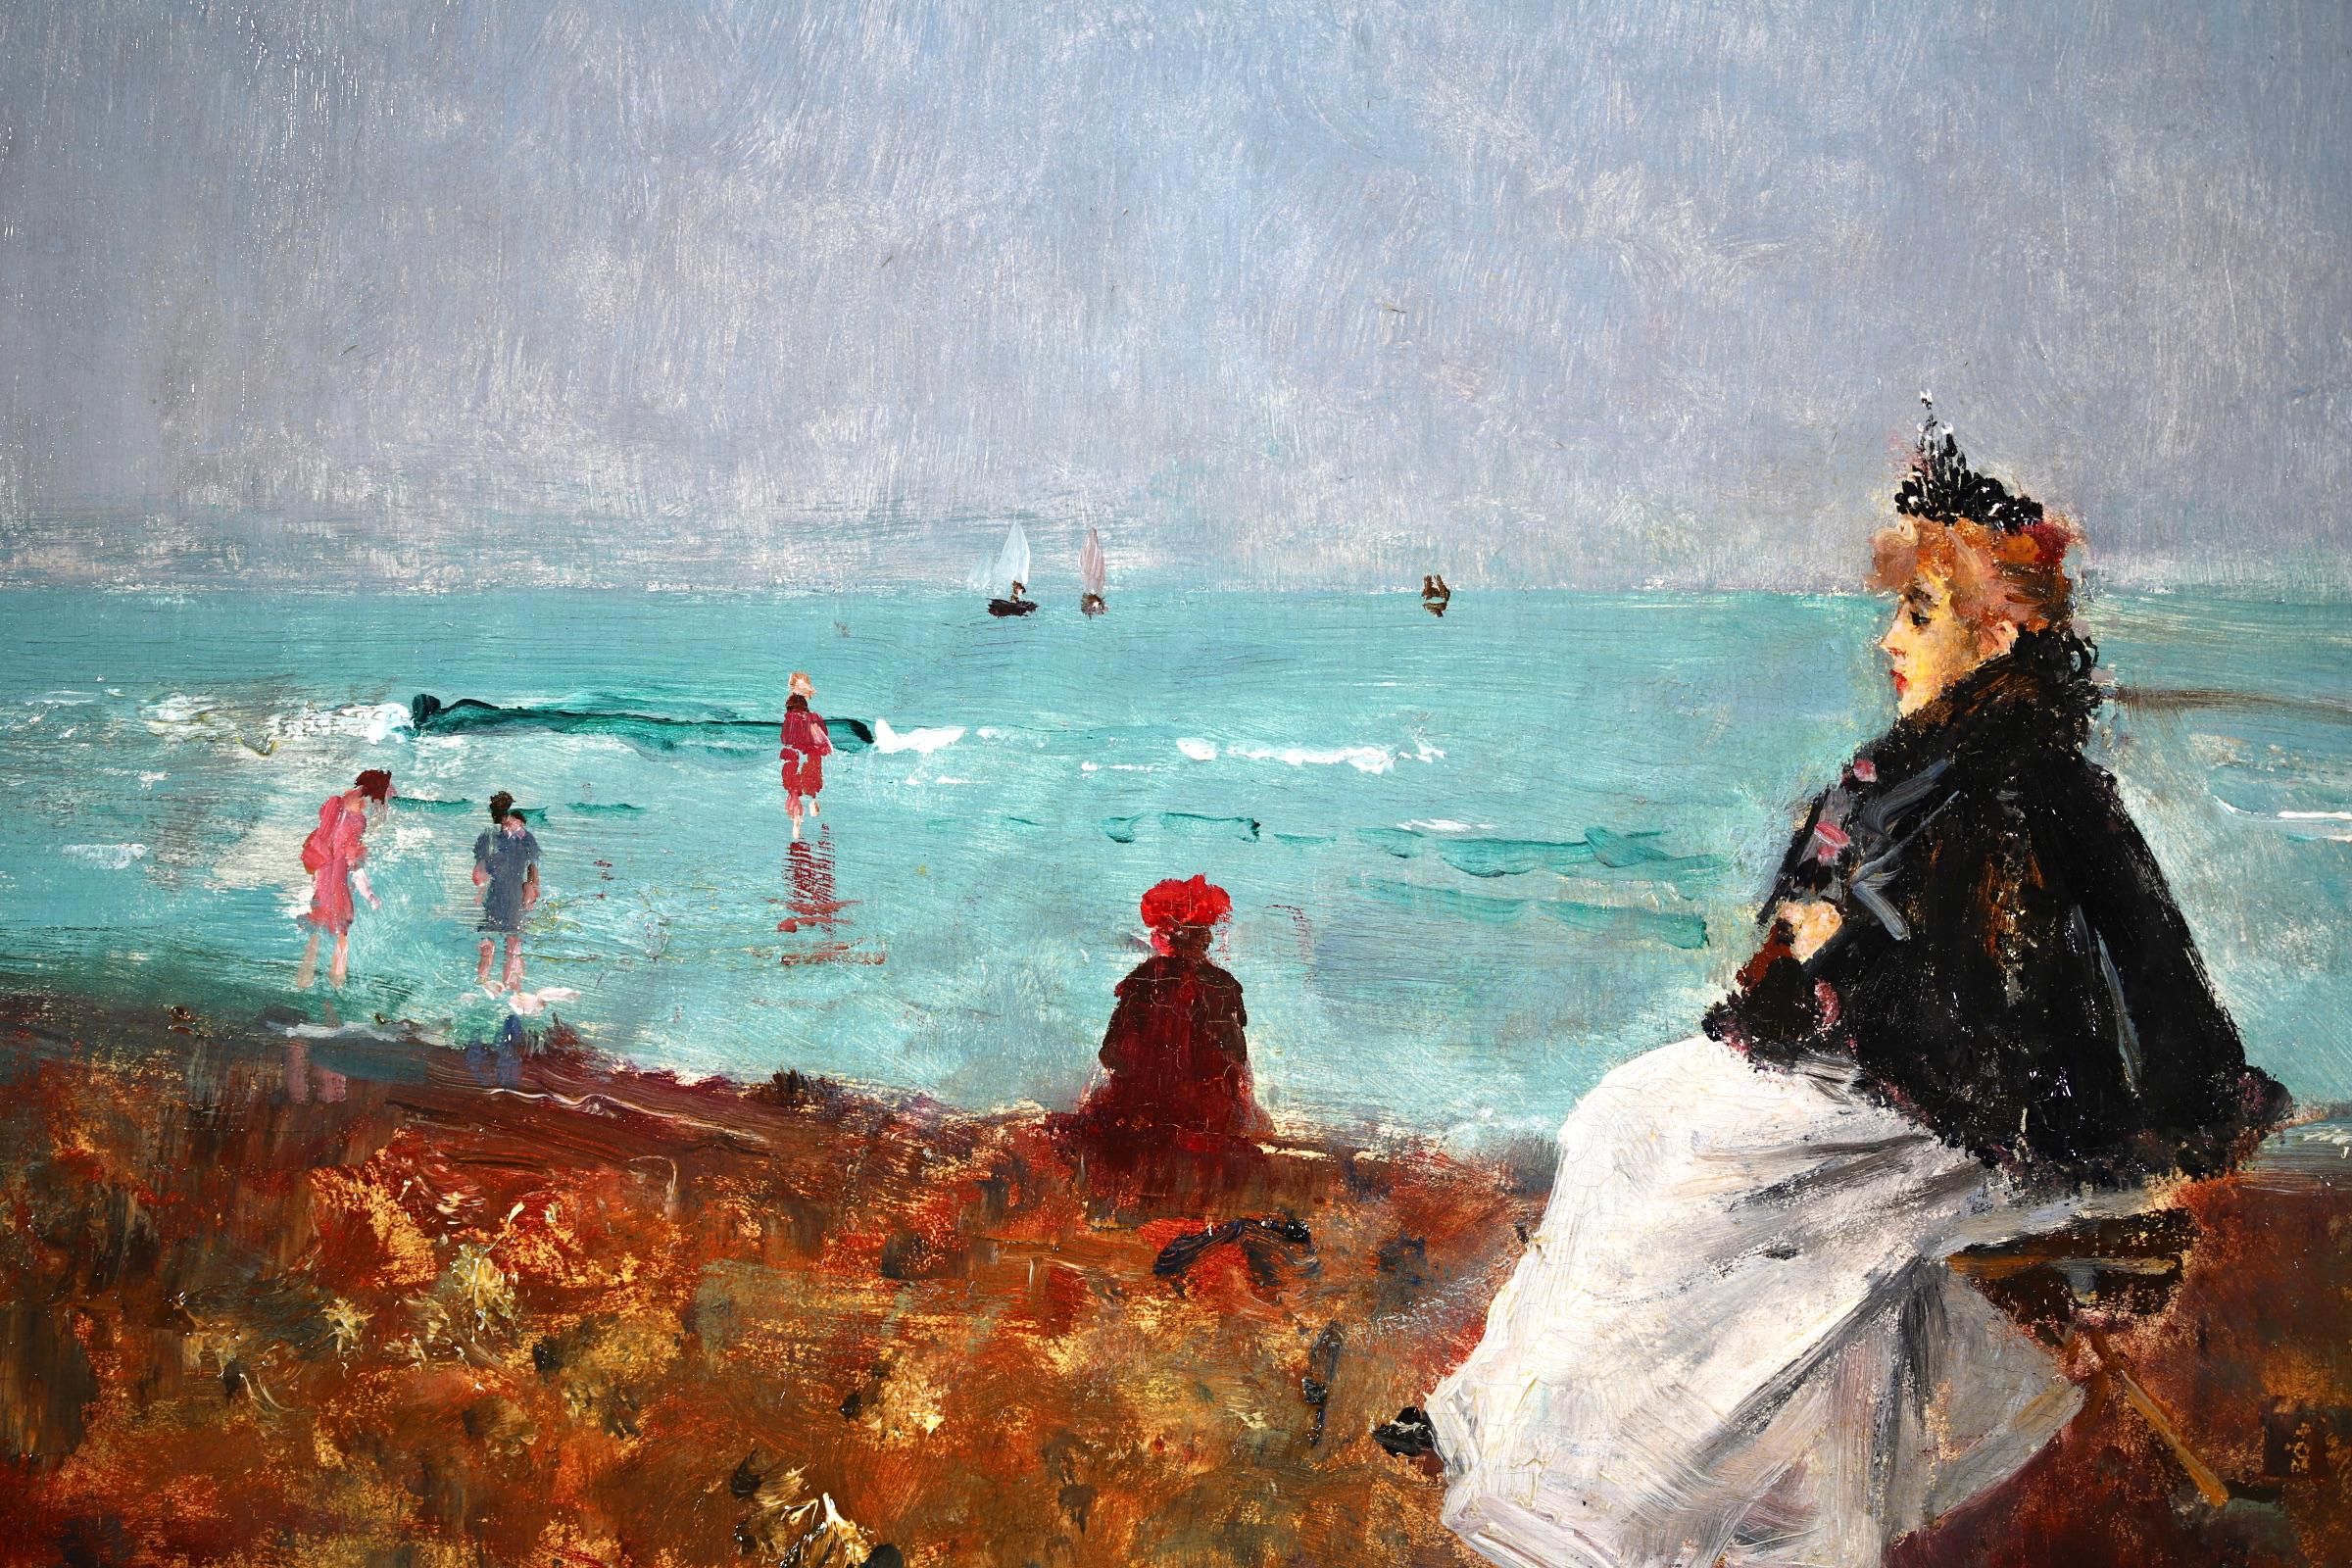 Signé et daté figures dans un paysage marin, huile sur panneau du peintre impressionniste belge Alfred Emile Leopold Stevens. L'œuvre représente une femme élégante assise sur un étal à la plage, tandis que des enfants pagaient dans la mer turquoise.